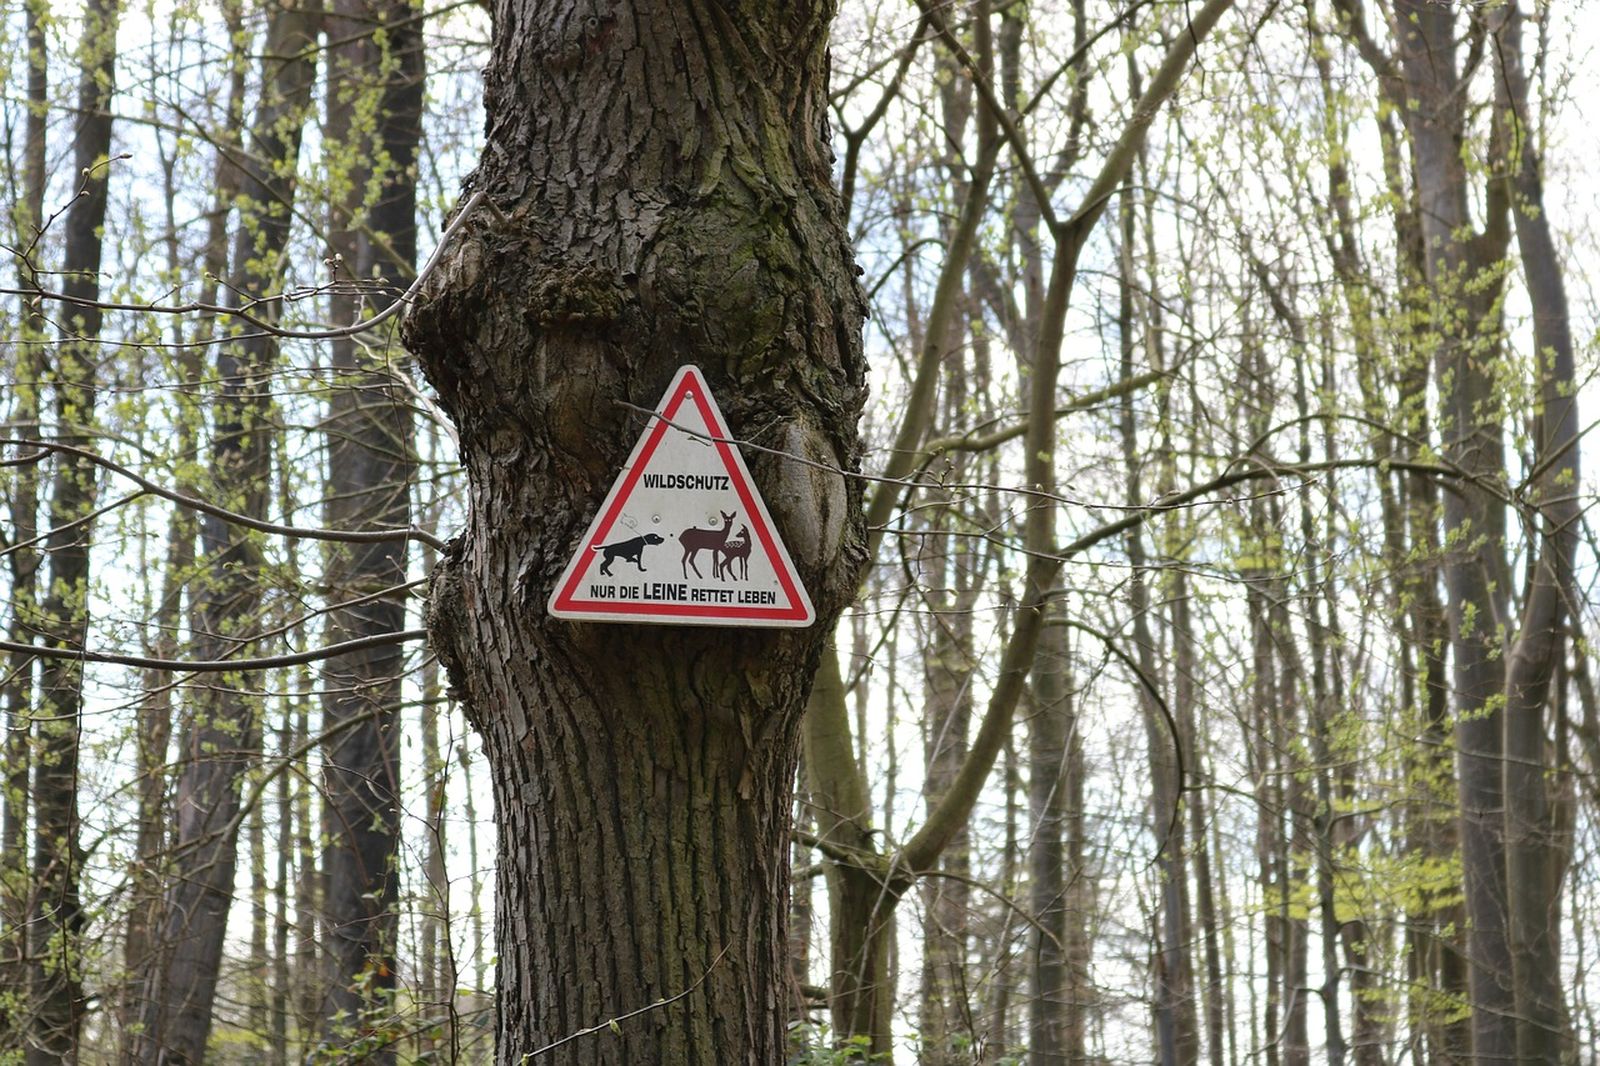 Dreieckigs Gebotsschild an Baum im Wald: "Wildschutz - nur die Leine rettet Leben"